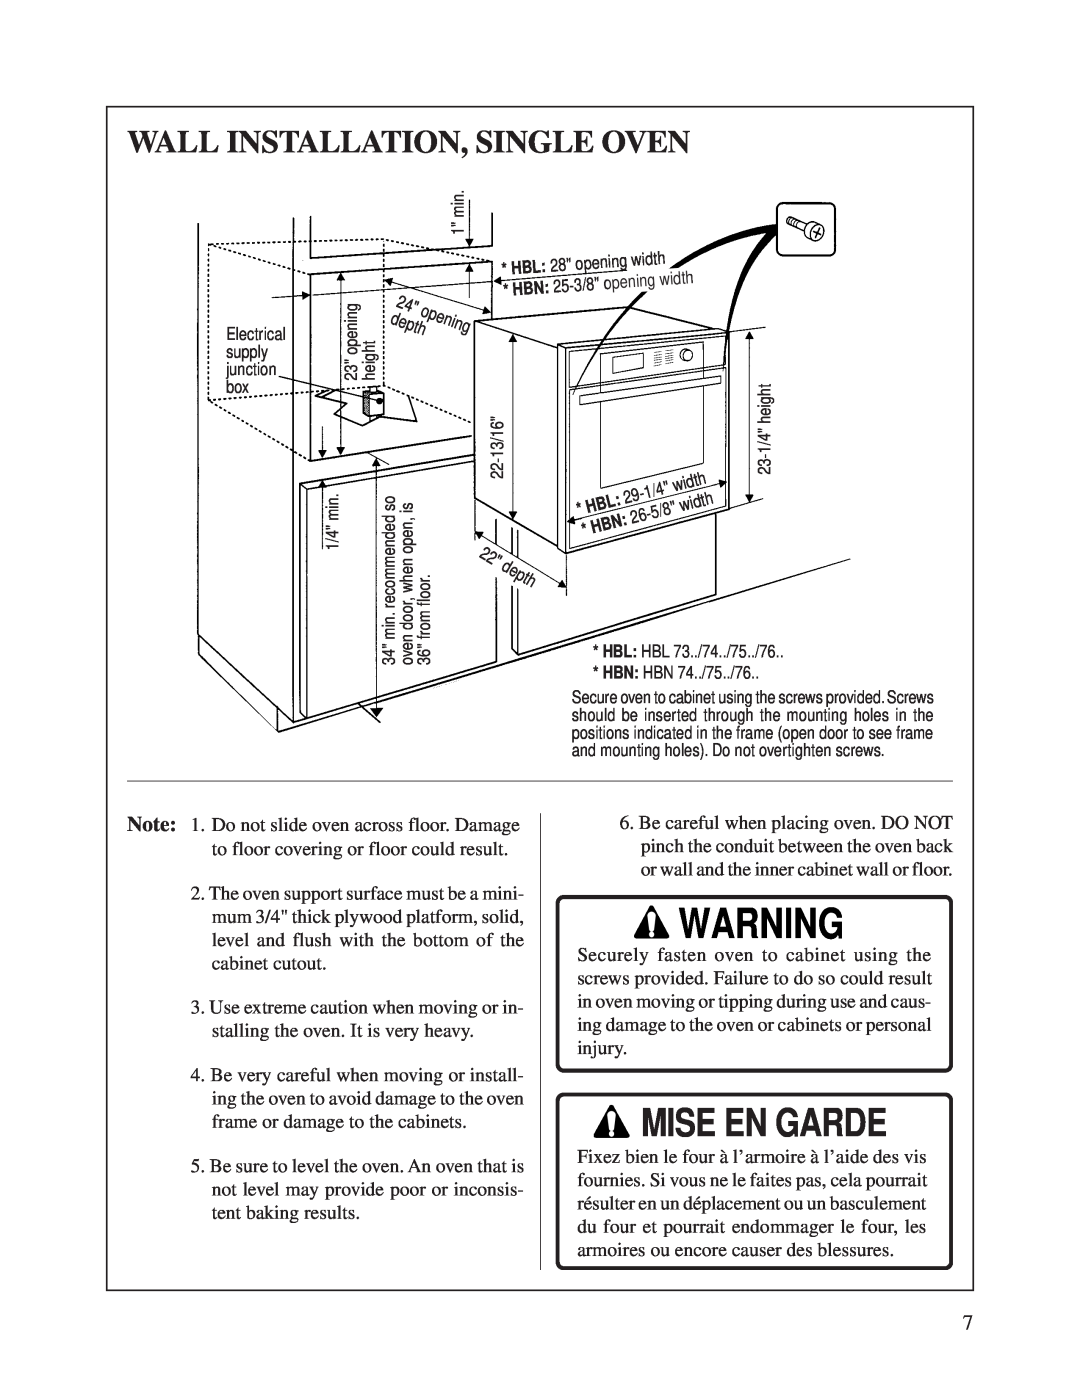 Bosch Appliances HBN 74 instruction manual Mise En Garde, Wall Installation, Single Oven 